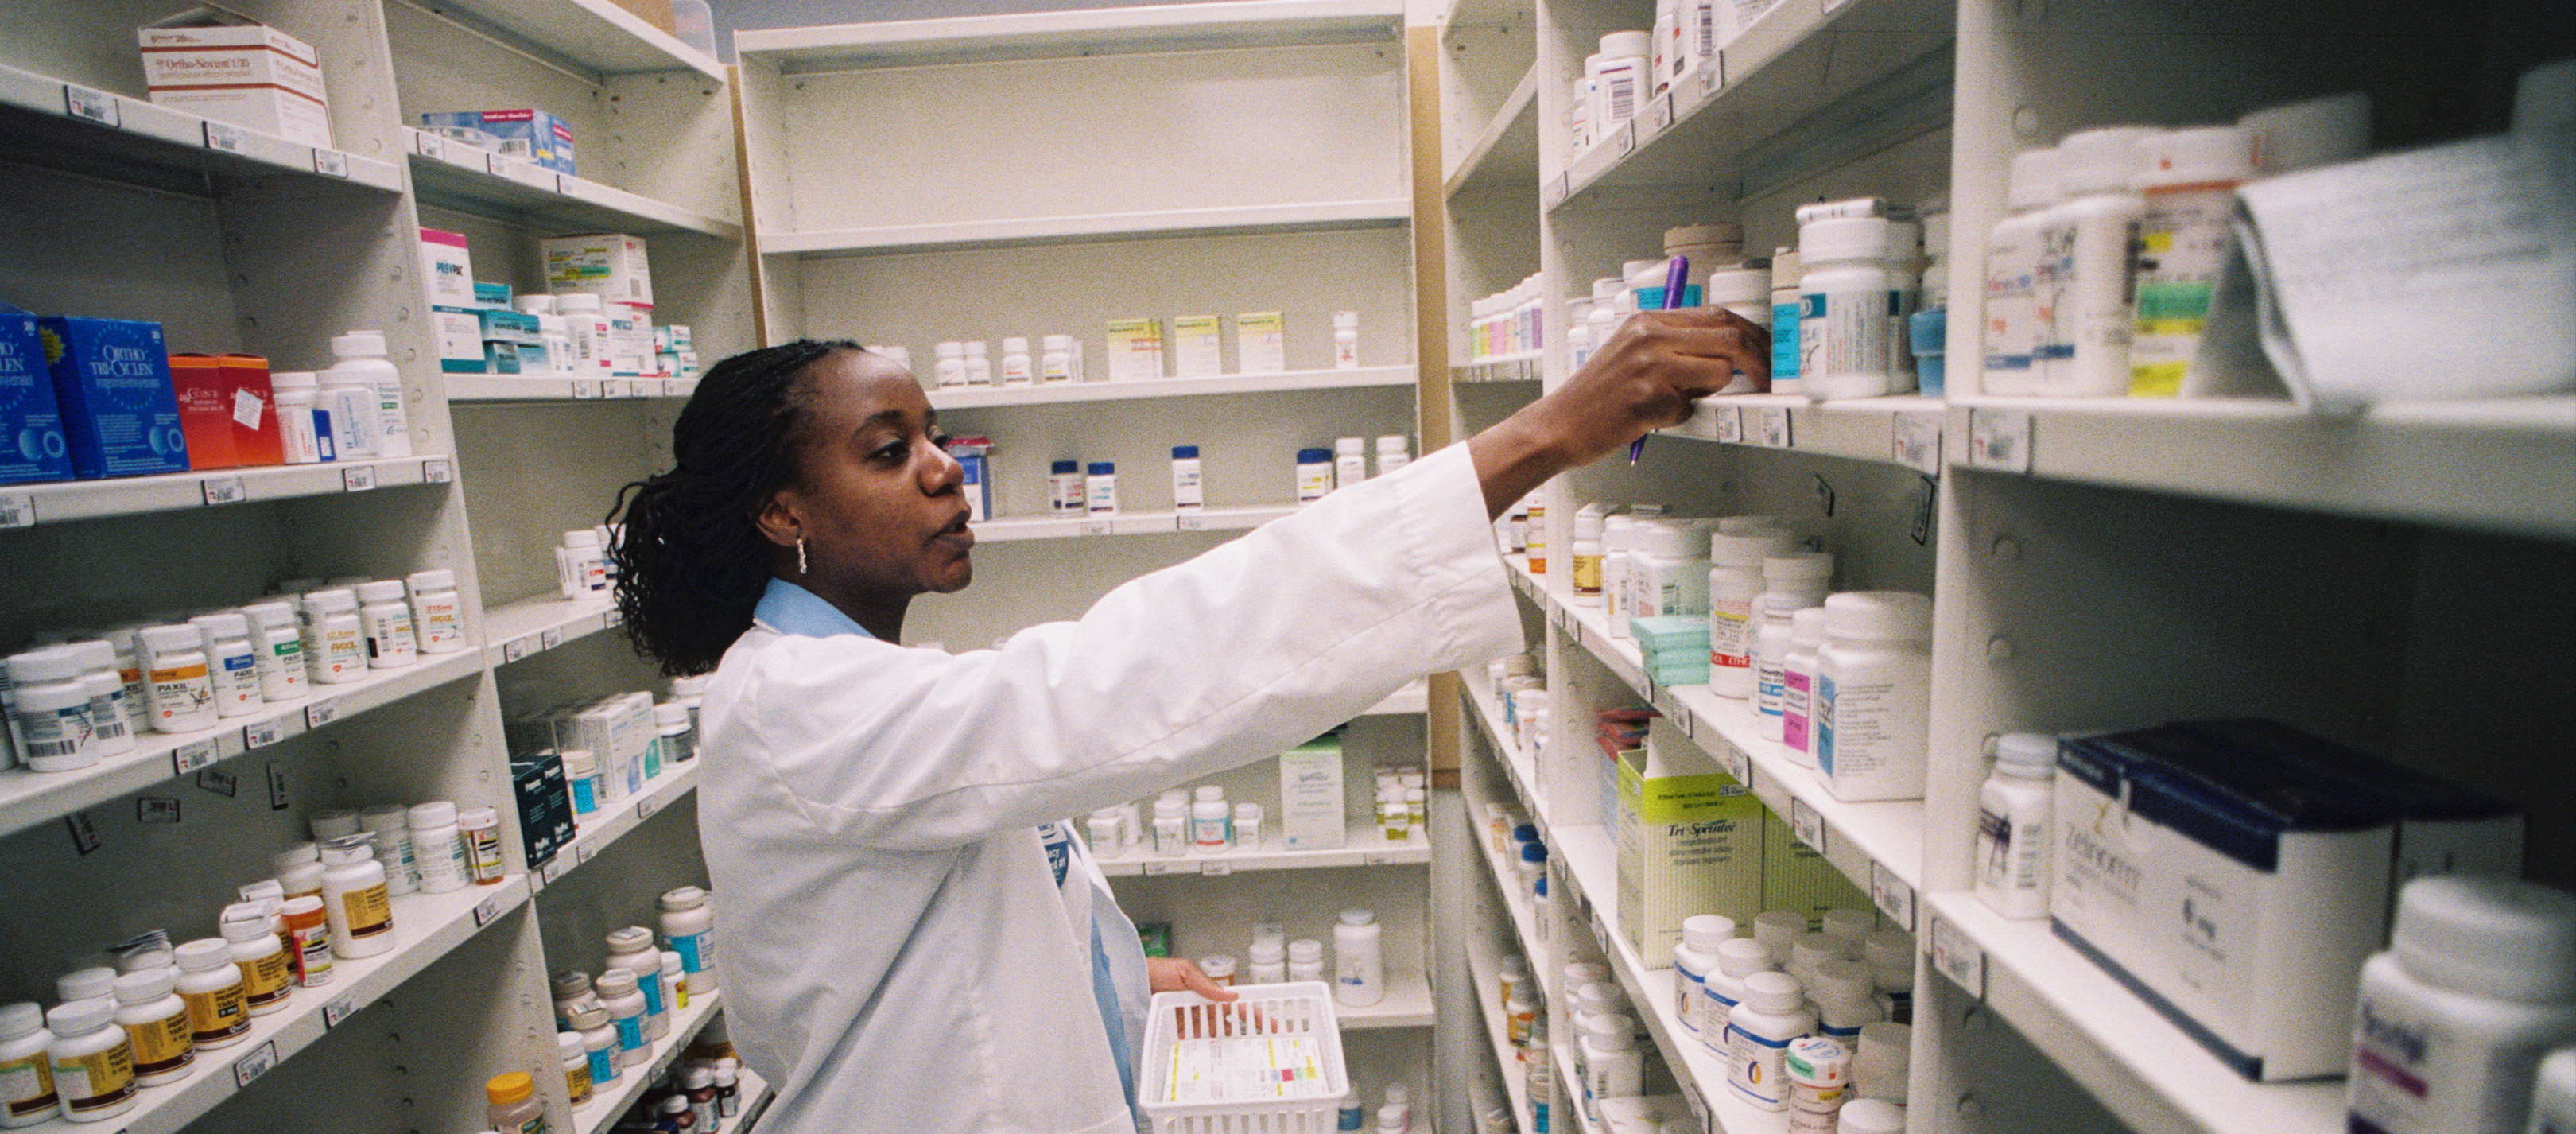 Pharmacist shelving medication